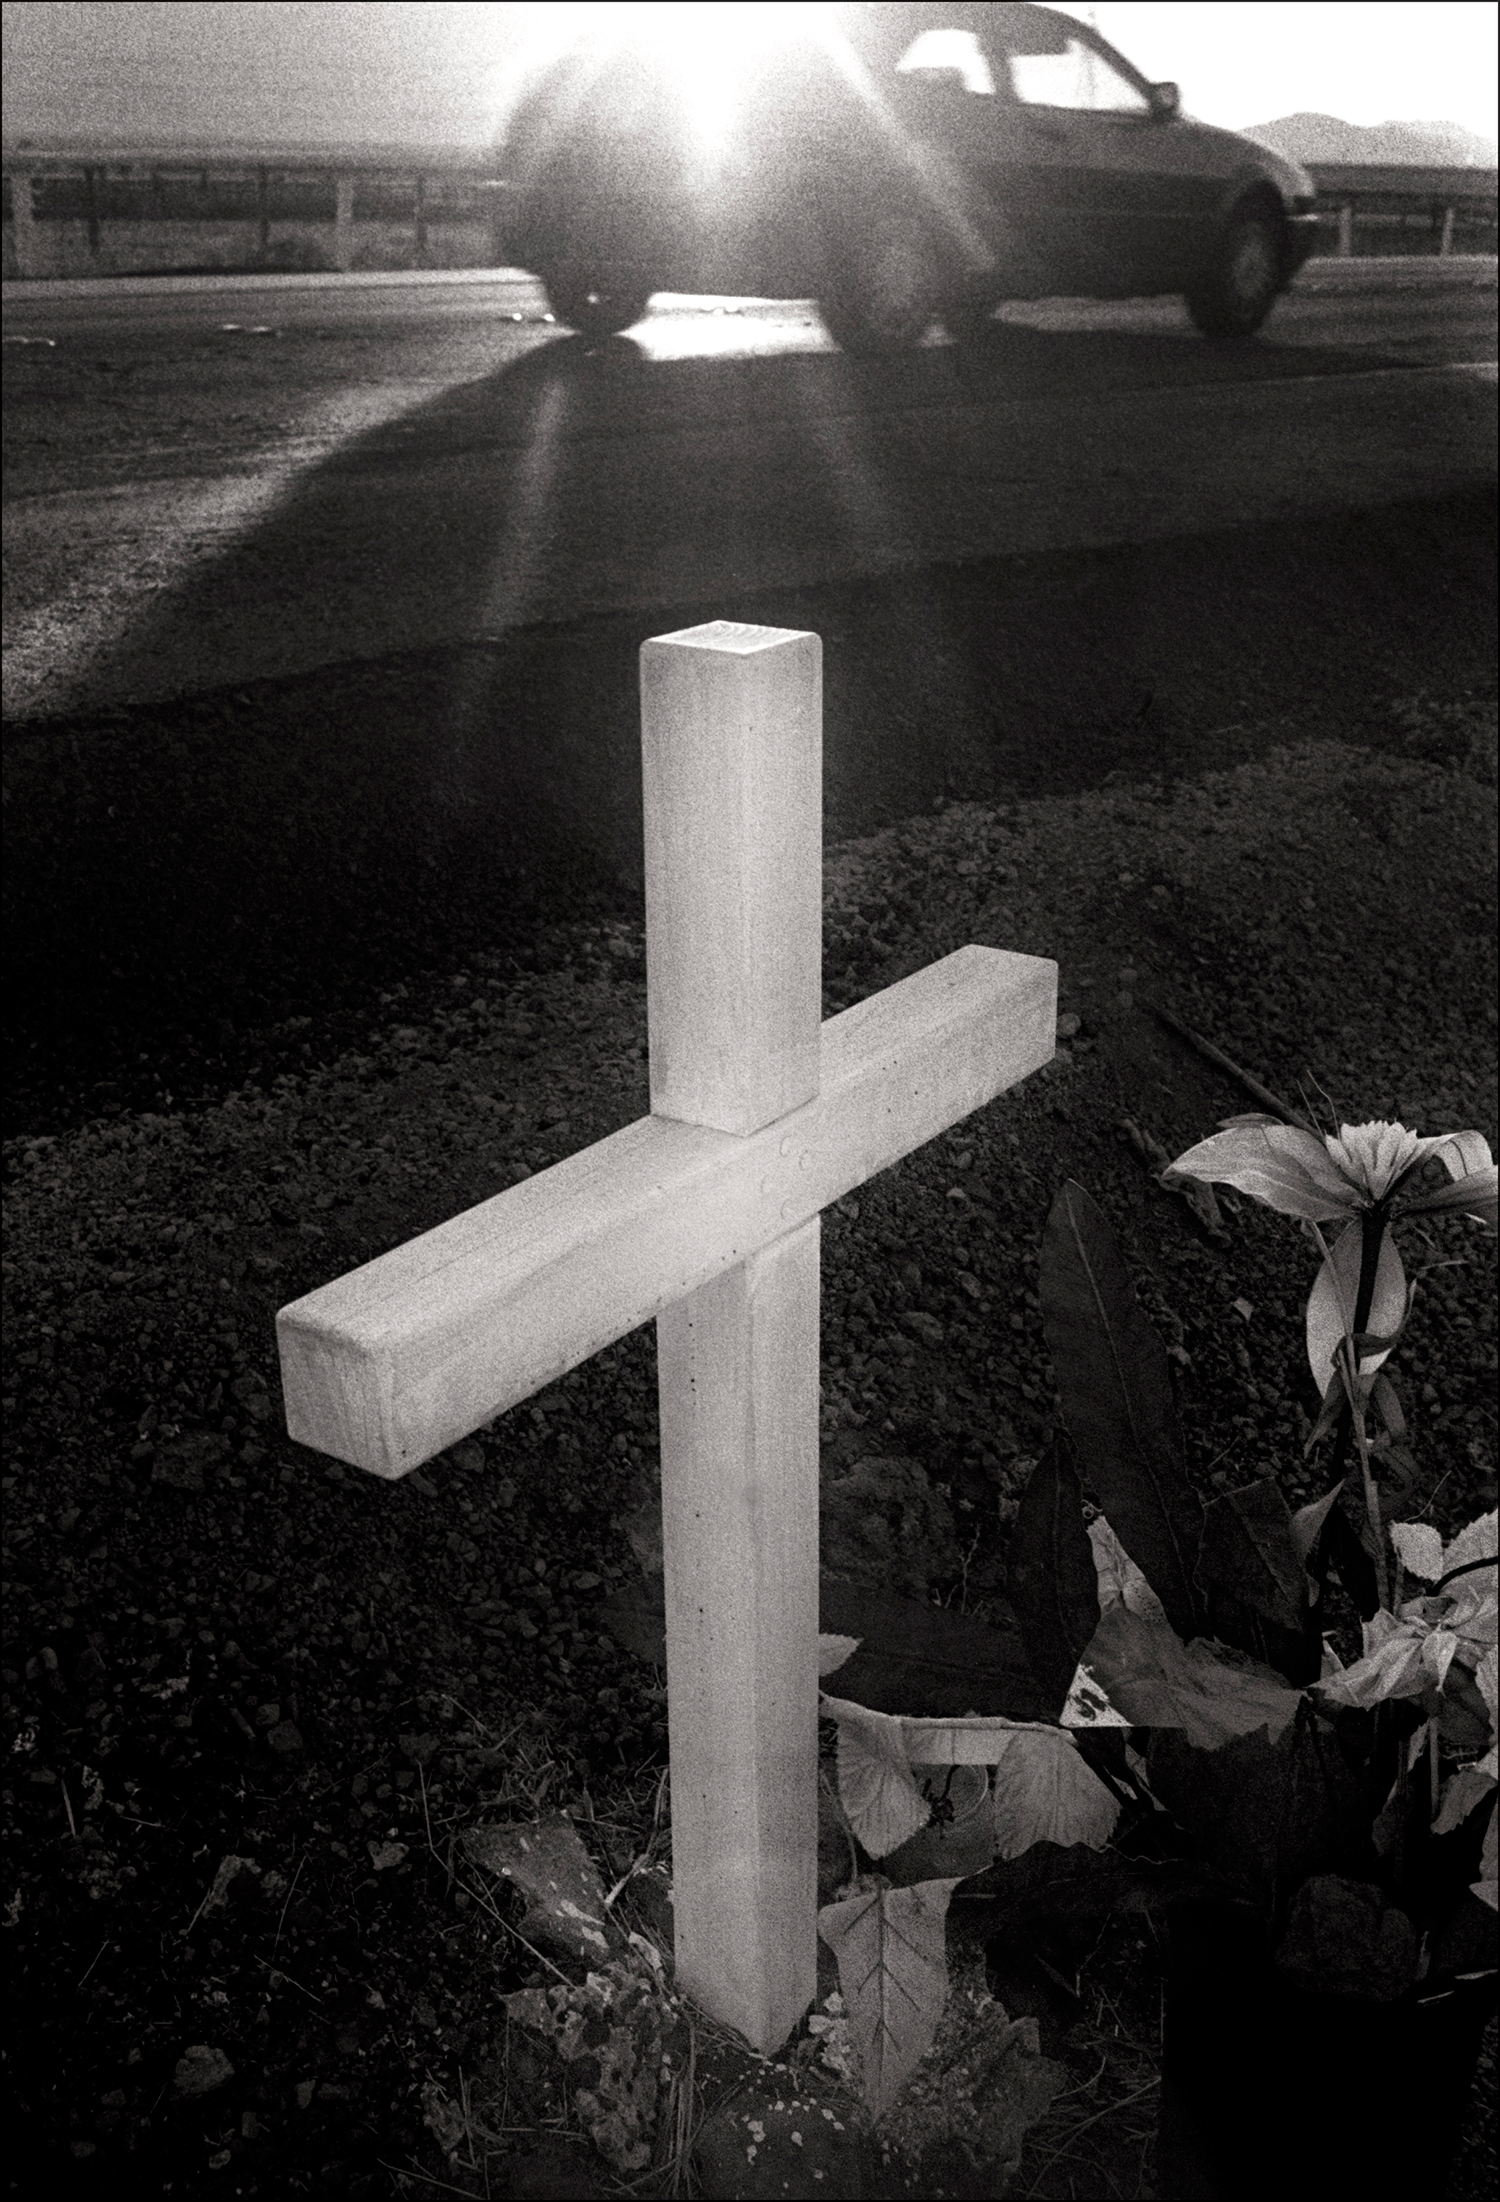 Roadside Cross, Petaluma, CA, 1995